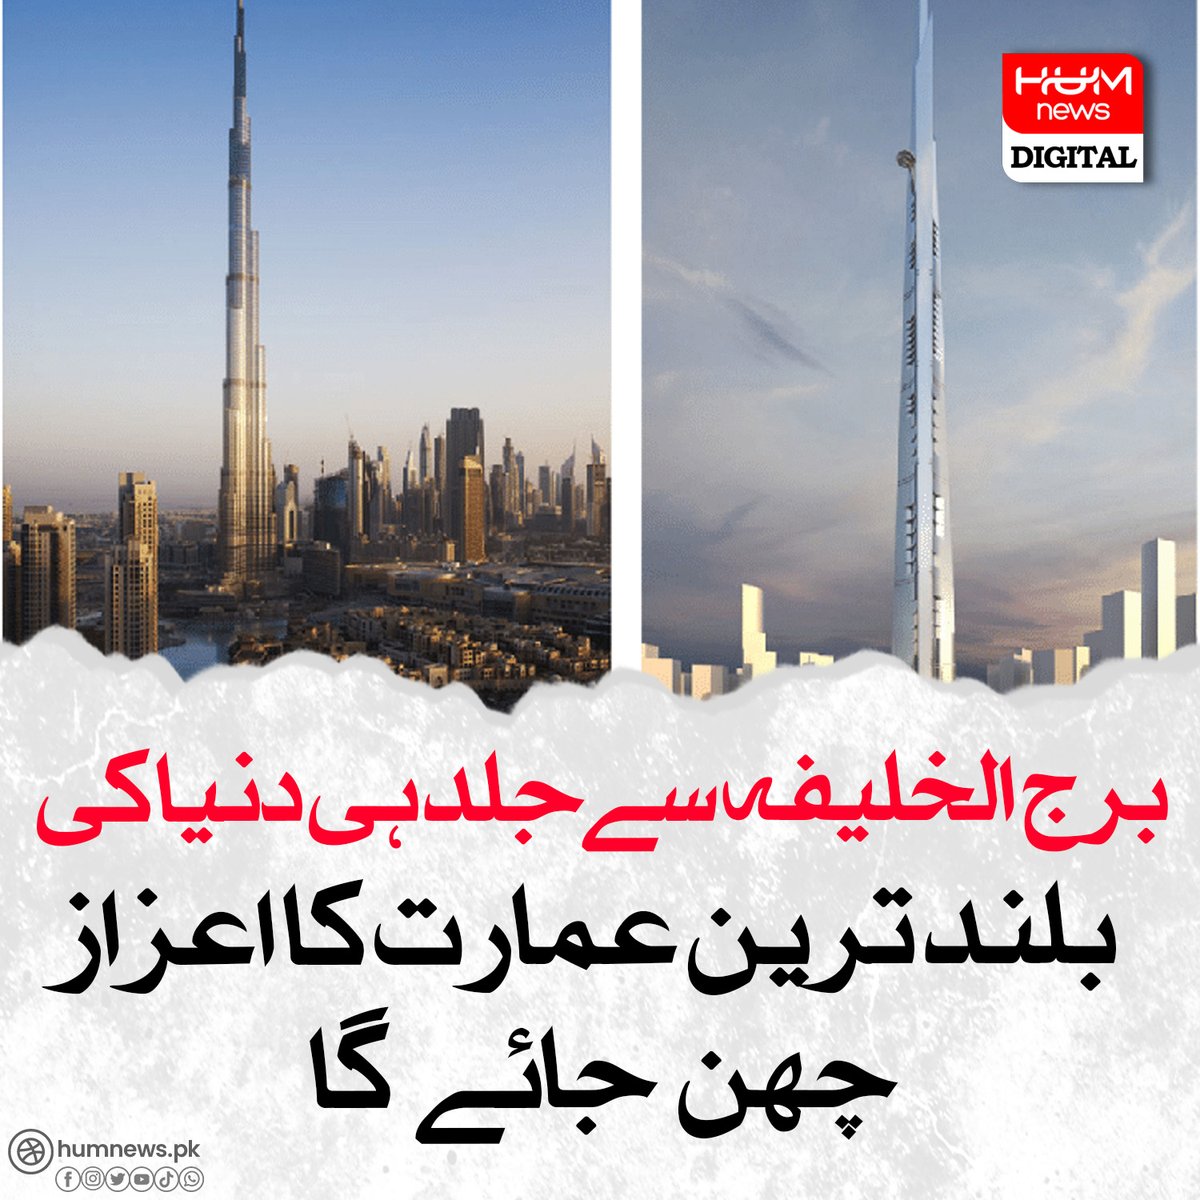 برج الخلیفہ سےجلد ہی دنیا کی بلند ترین عمارت کا اعزاز چھن جائے گا humnews.pk/latest/482202/